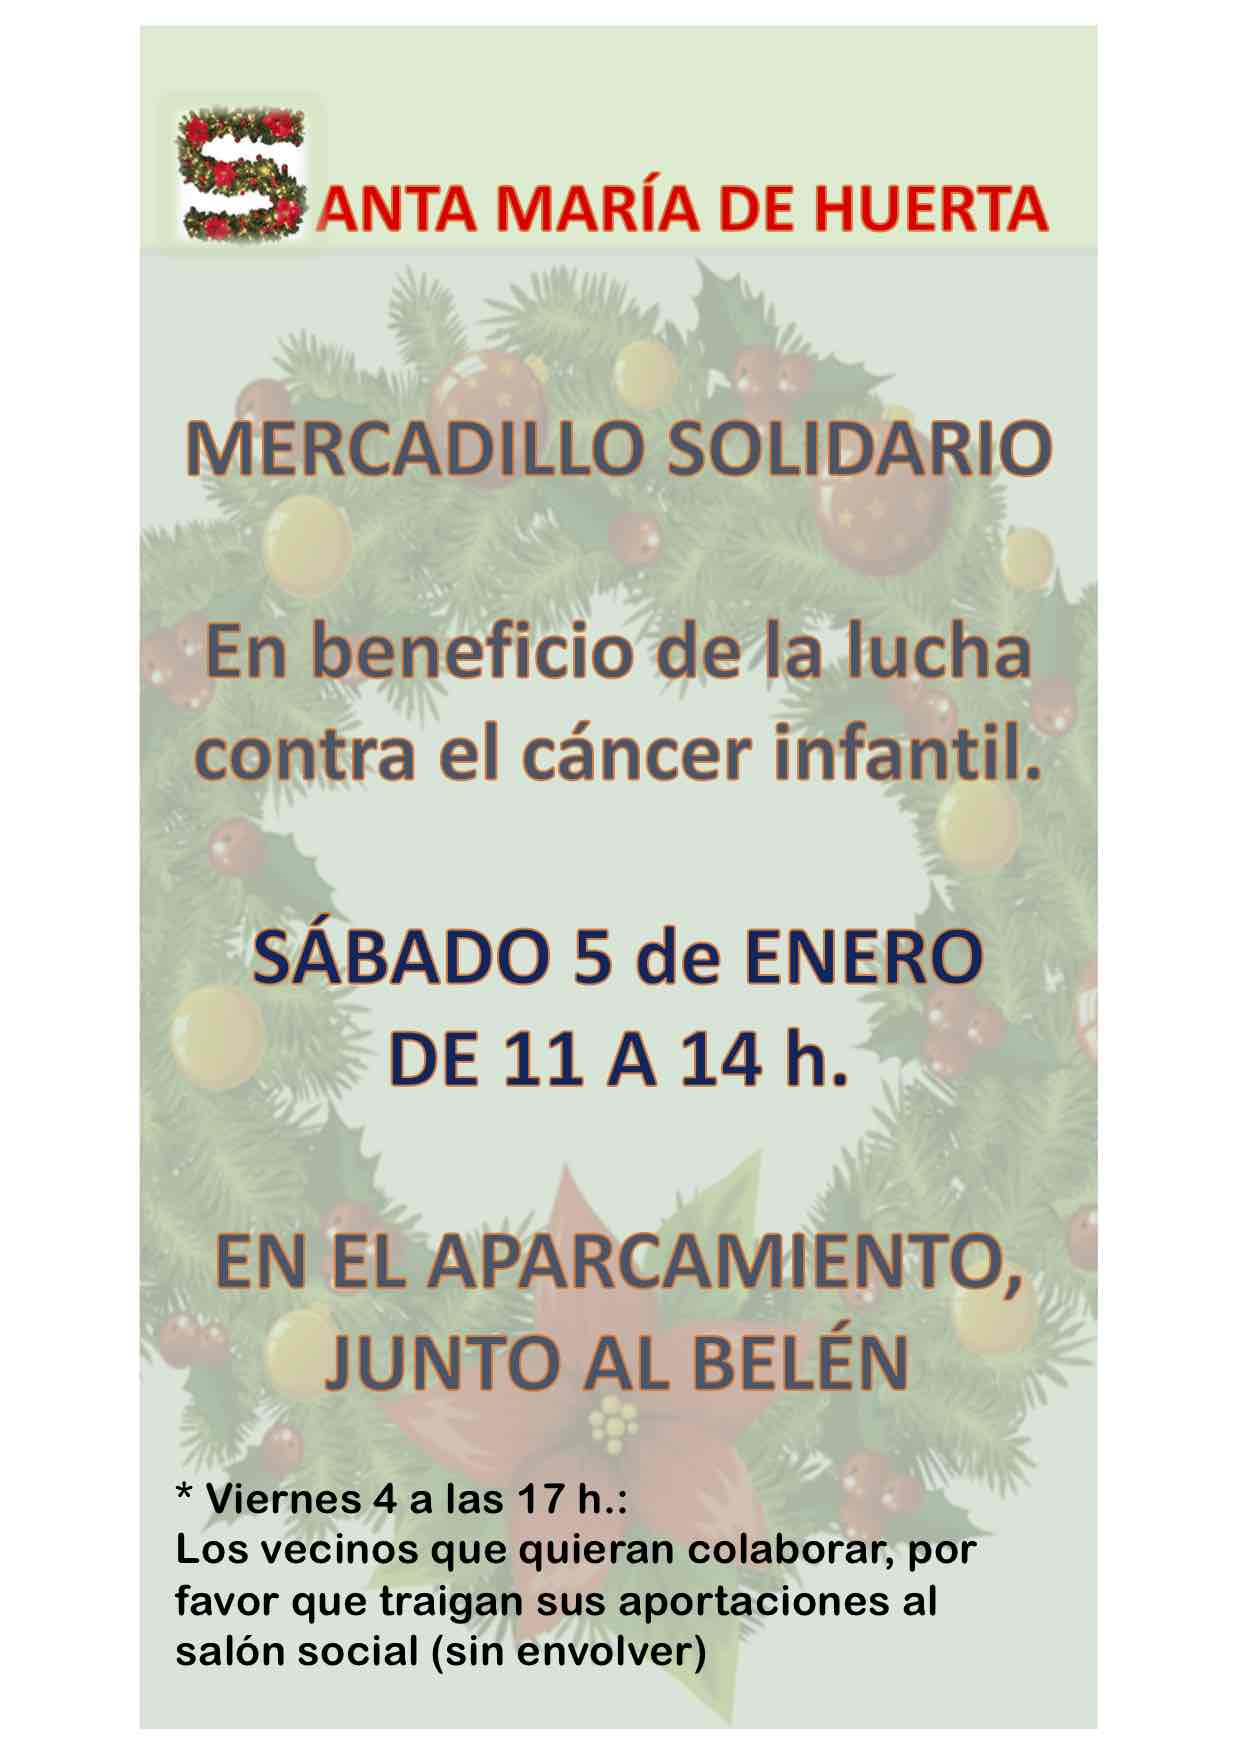 5 de enero de 2019. Mercadillo solidario en Santa María de Huerta